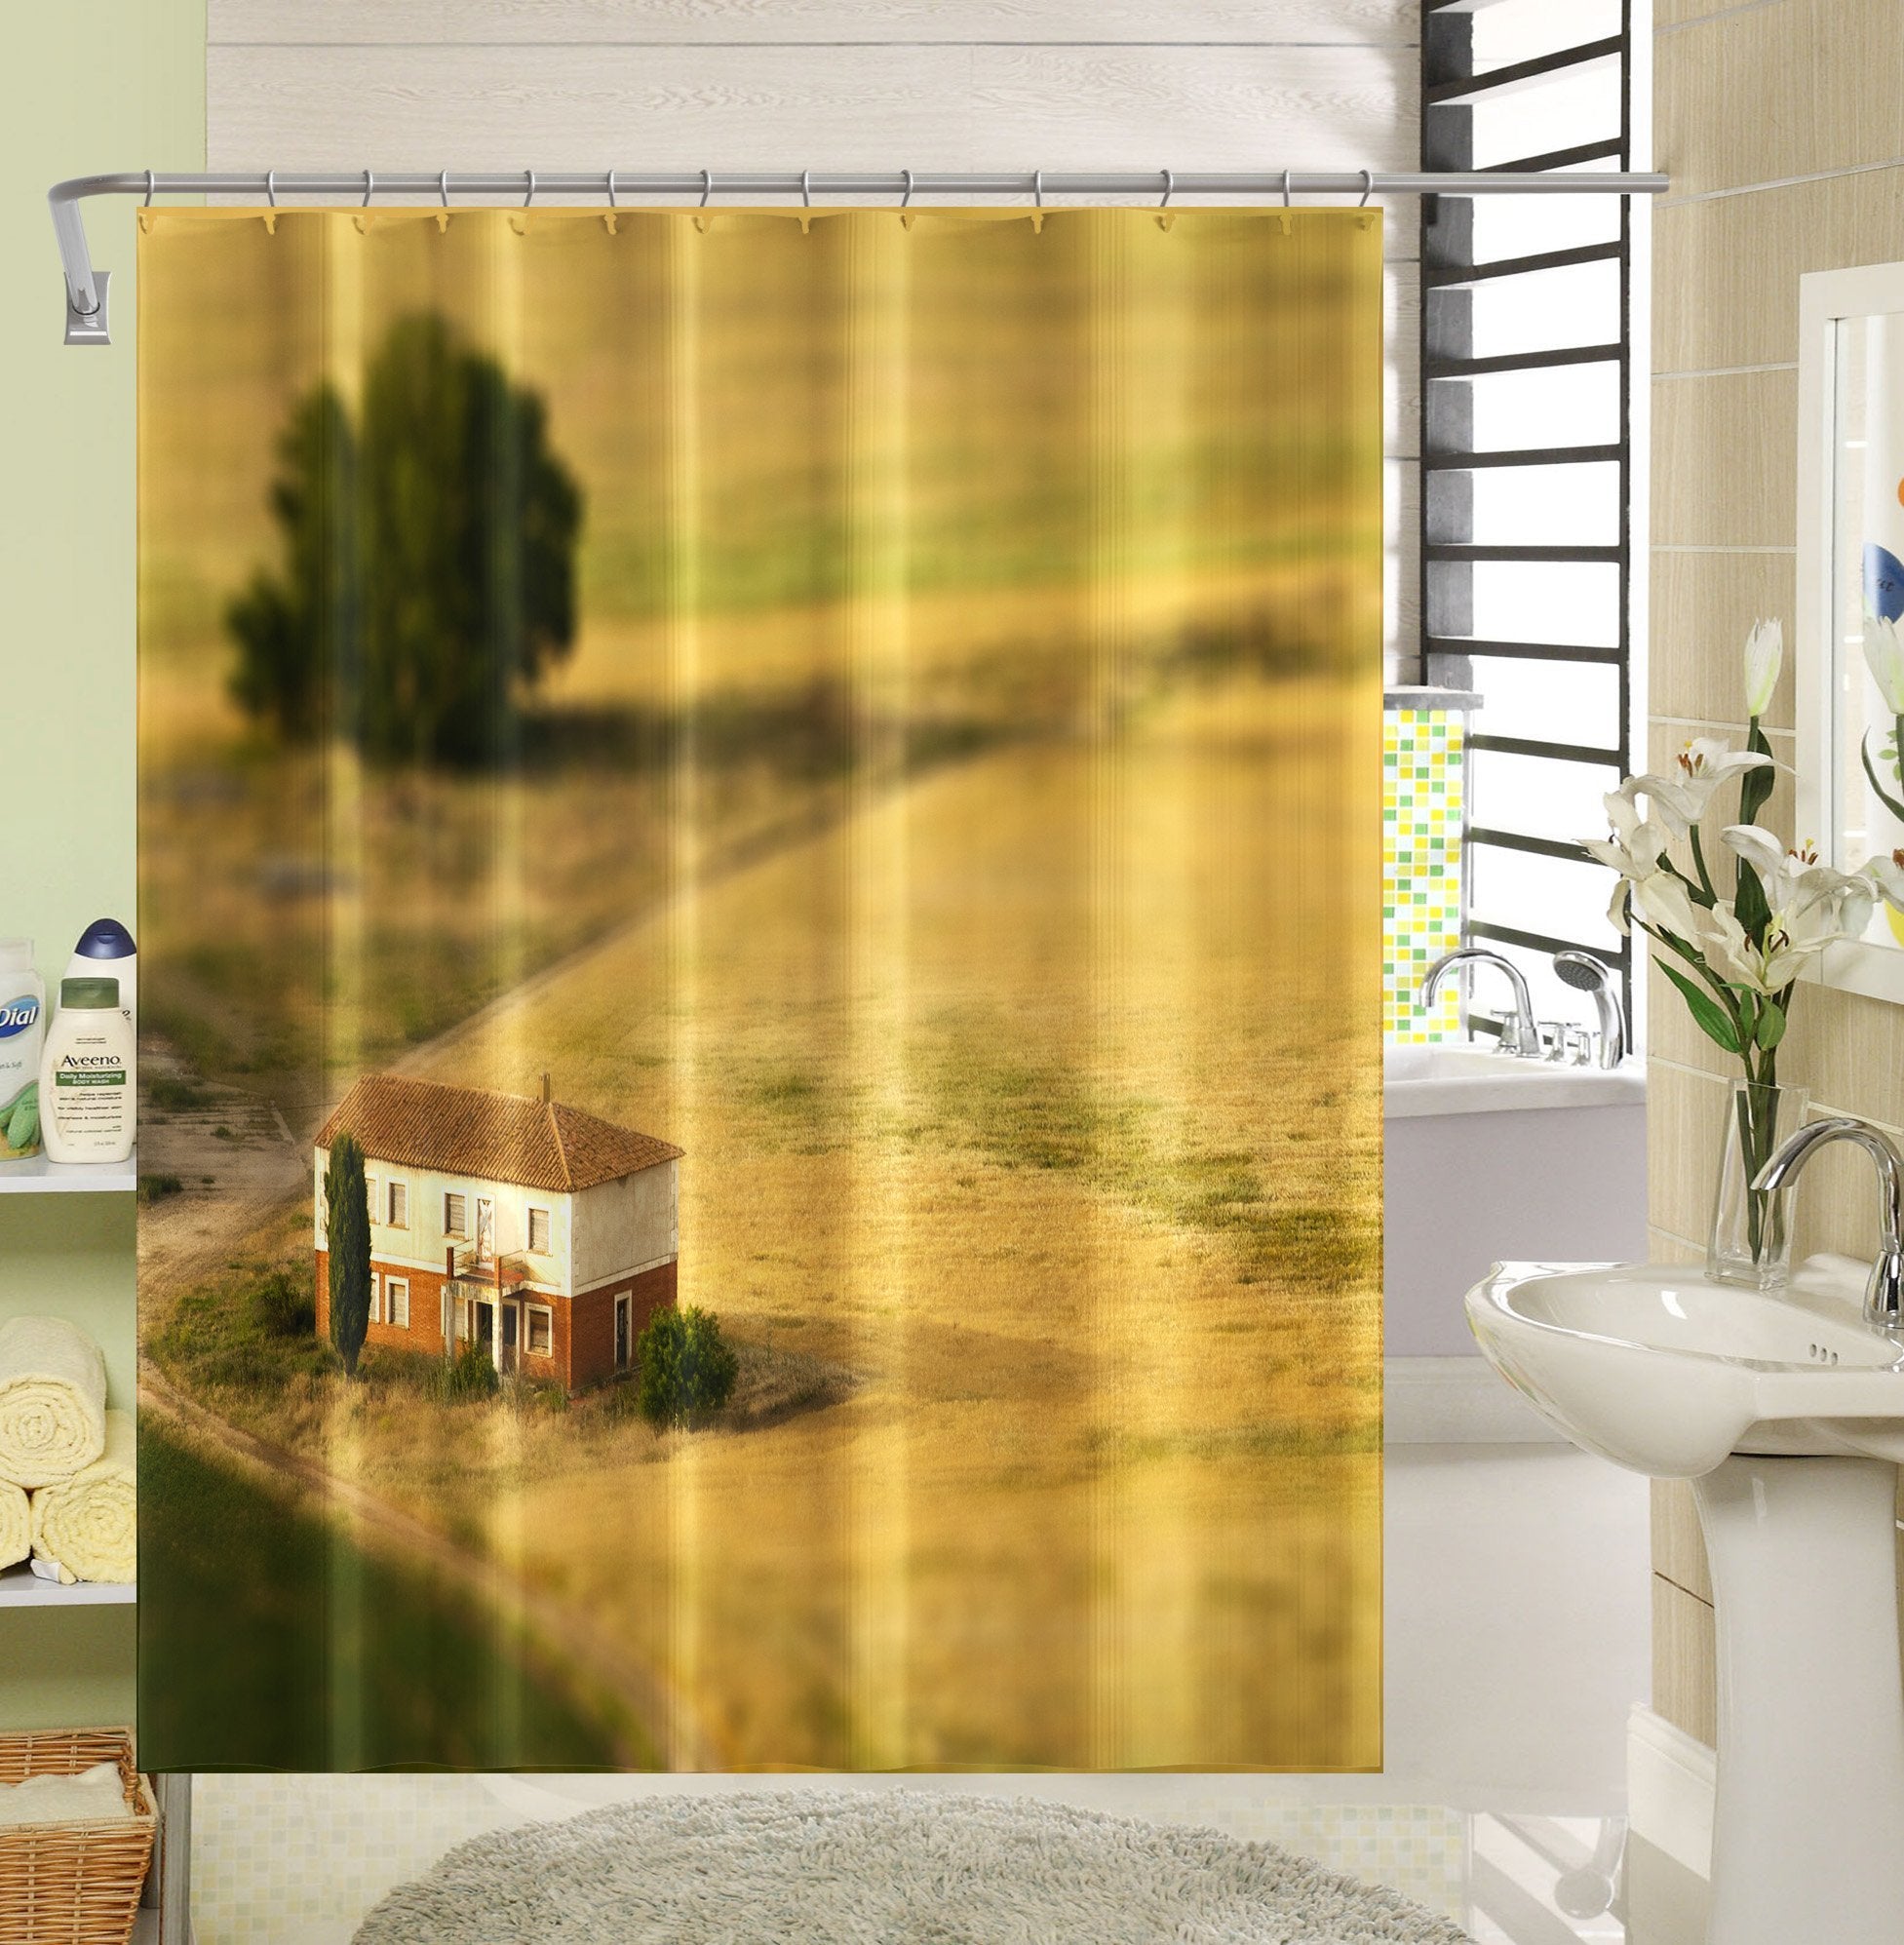 3D Prairie House 015 Shower Curtain 3D Shower Curtain AJ Creativity Home 